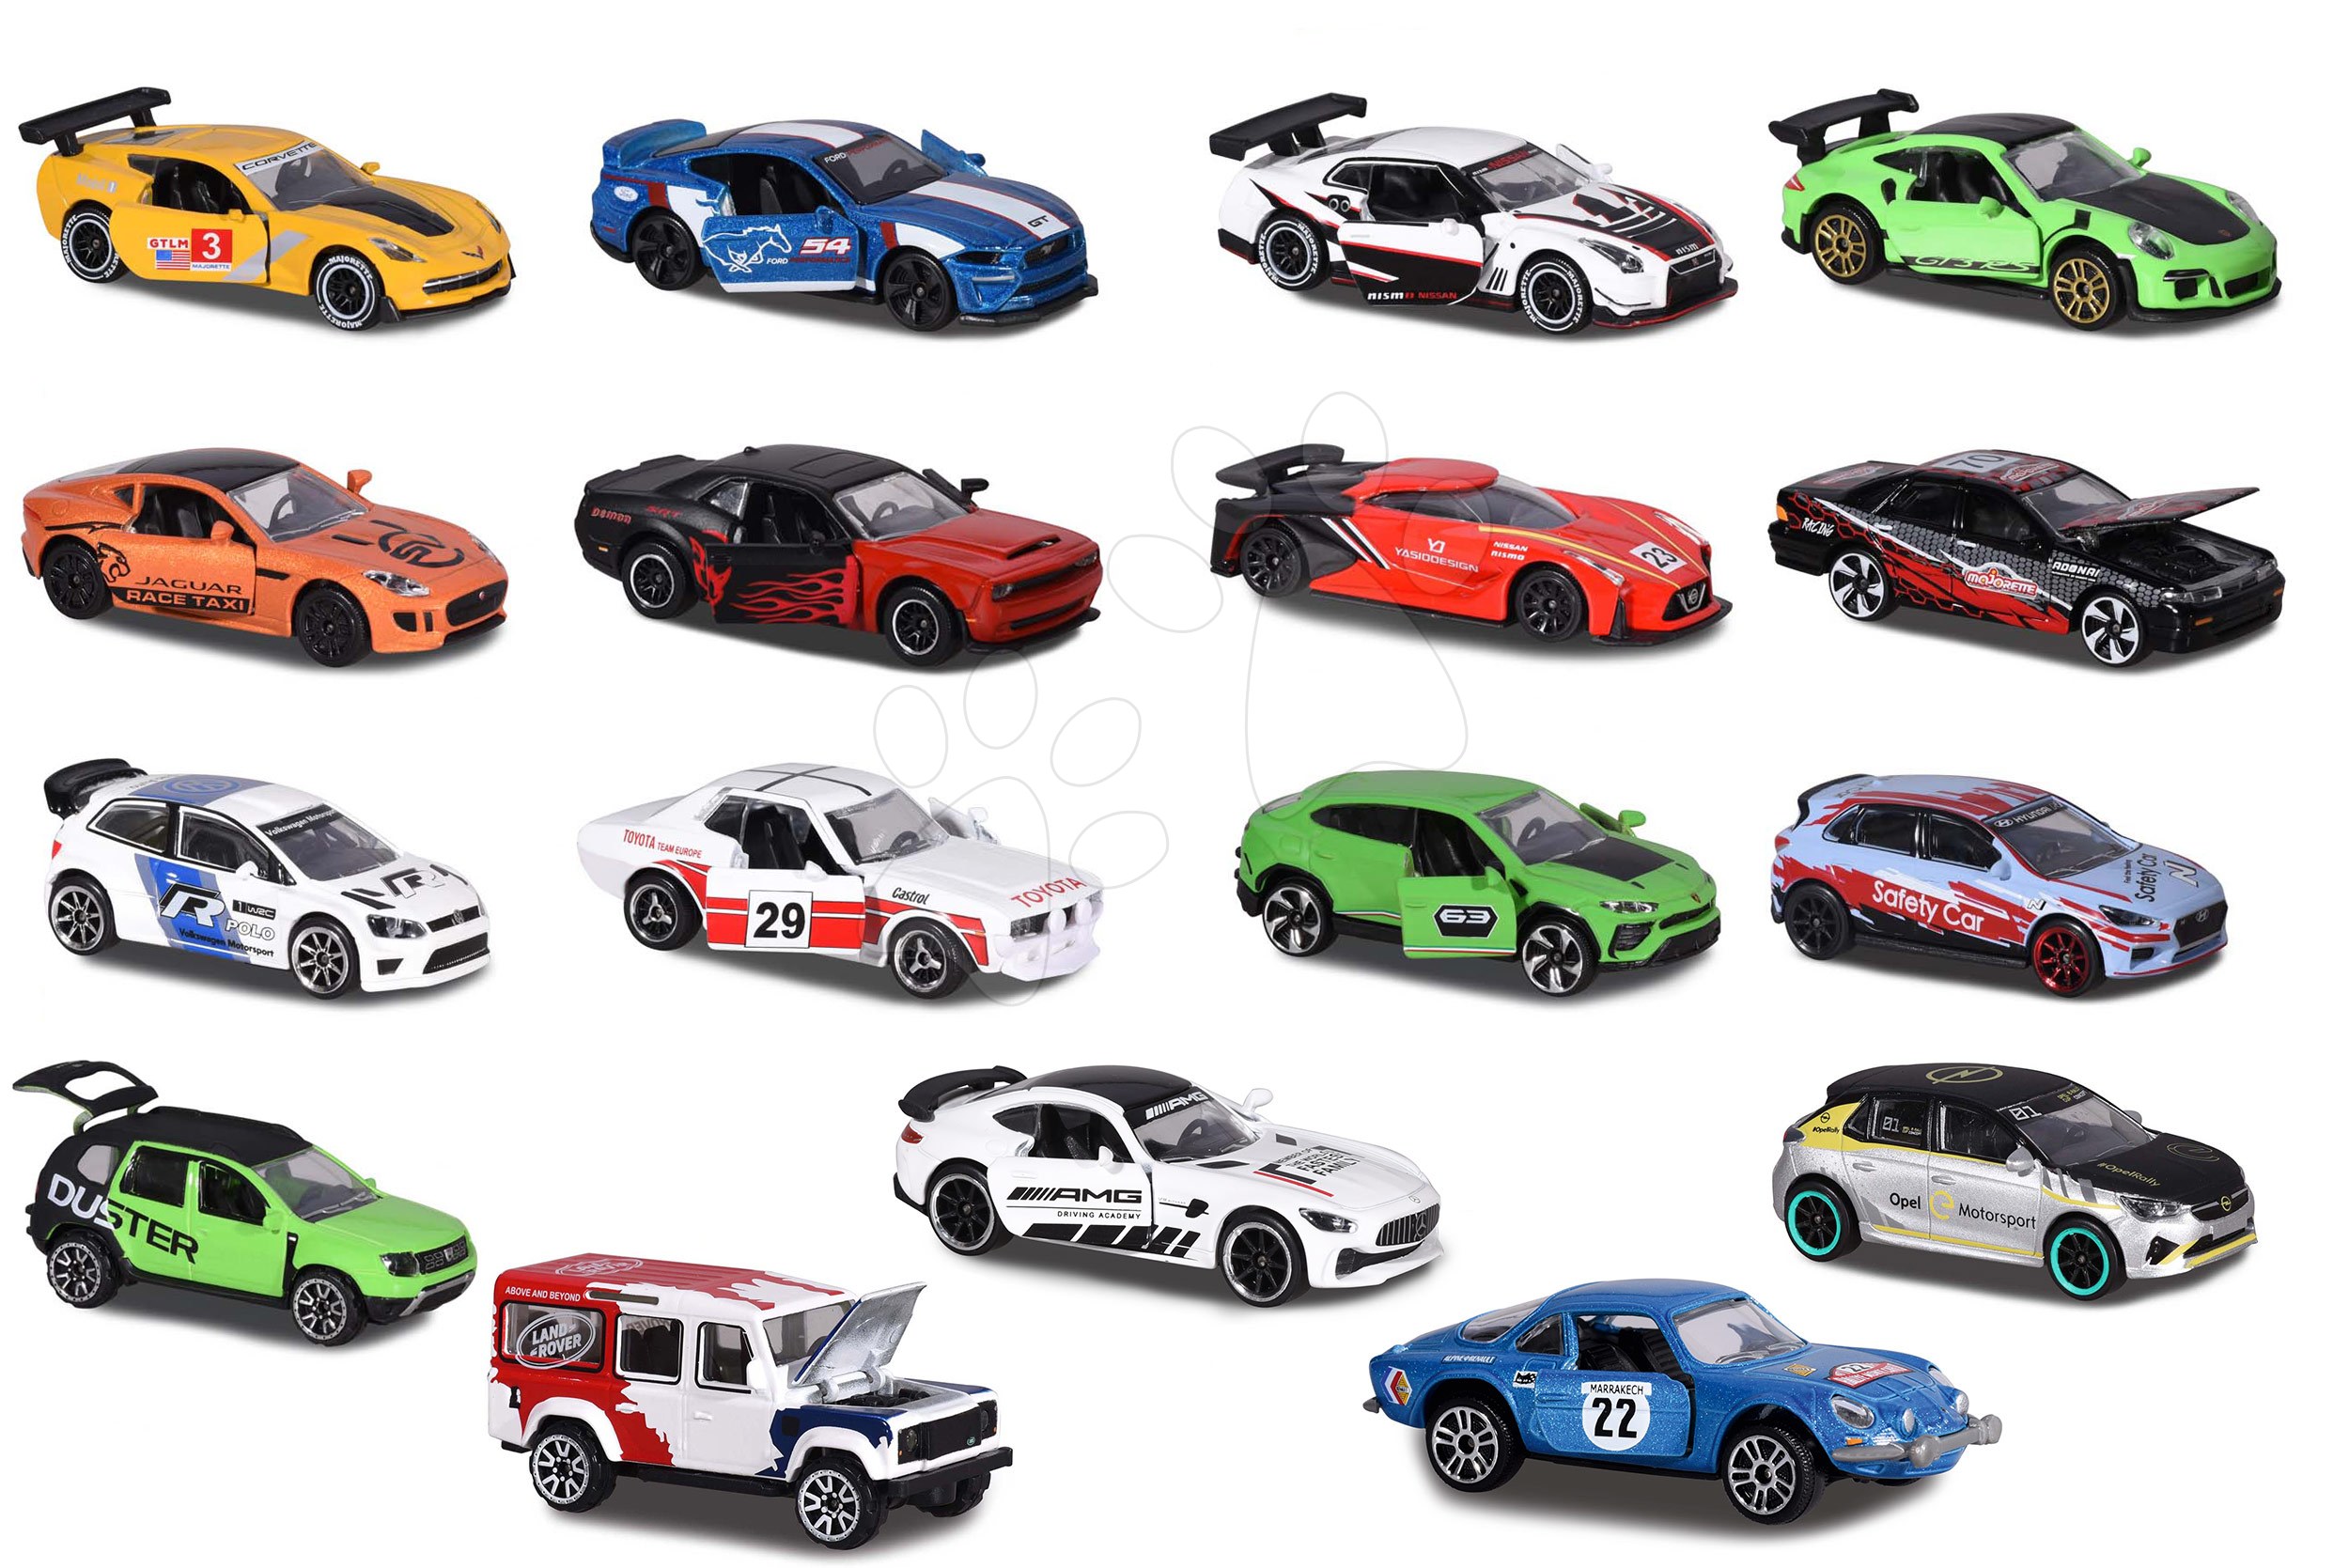 Versenyautó Racing Cars Majorette nyitható és gyűjtődobozzal 7,5 cm hosszú 18 különböző fajta